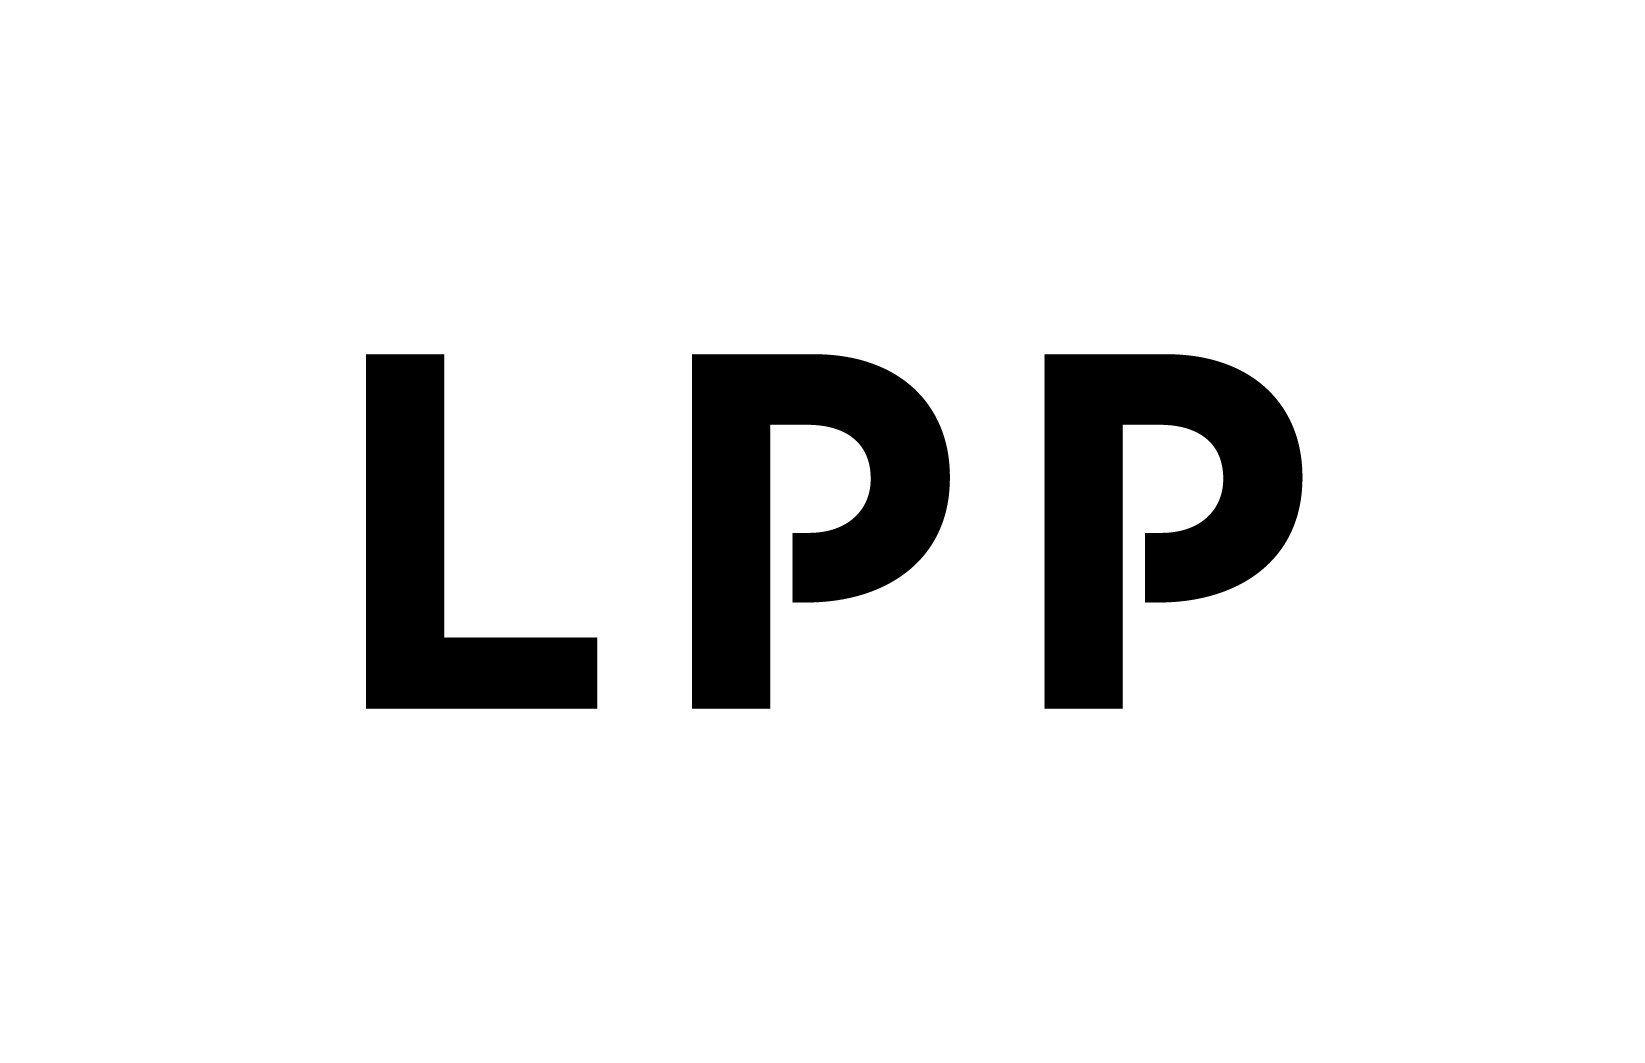 LPP Deutschland GmbH